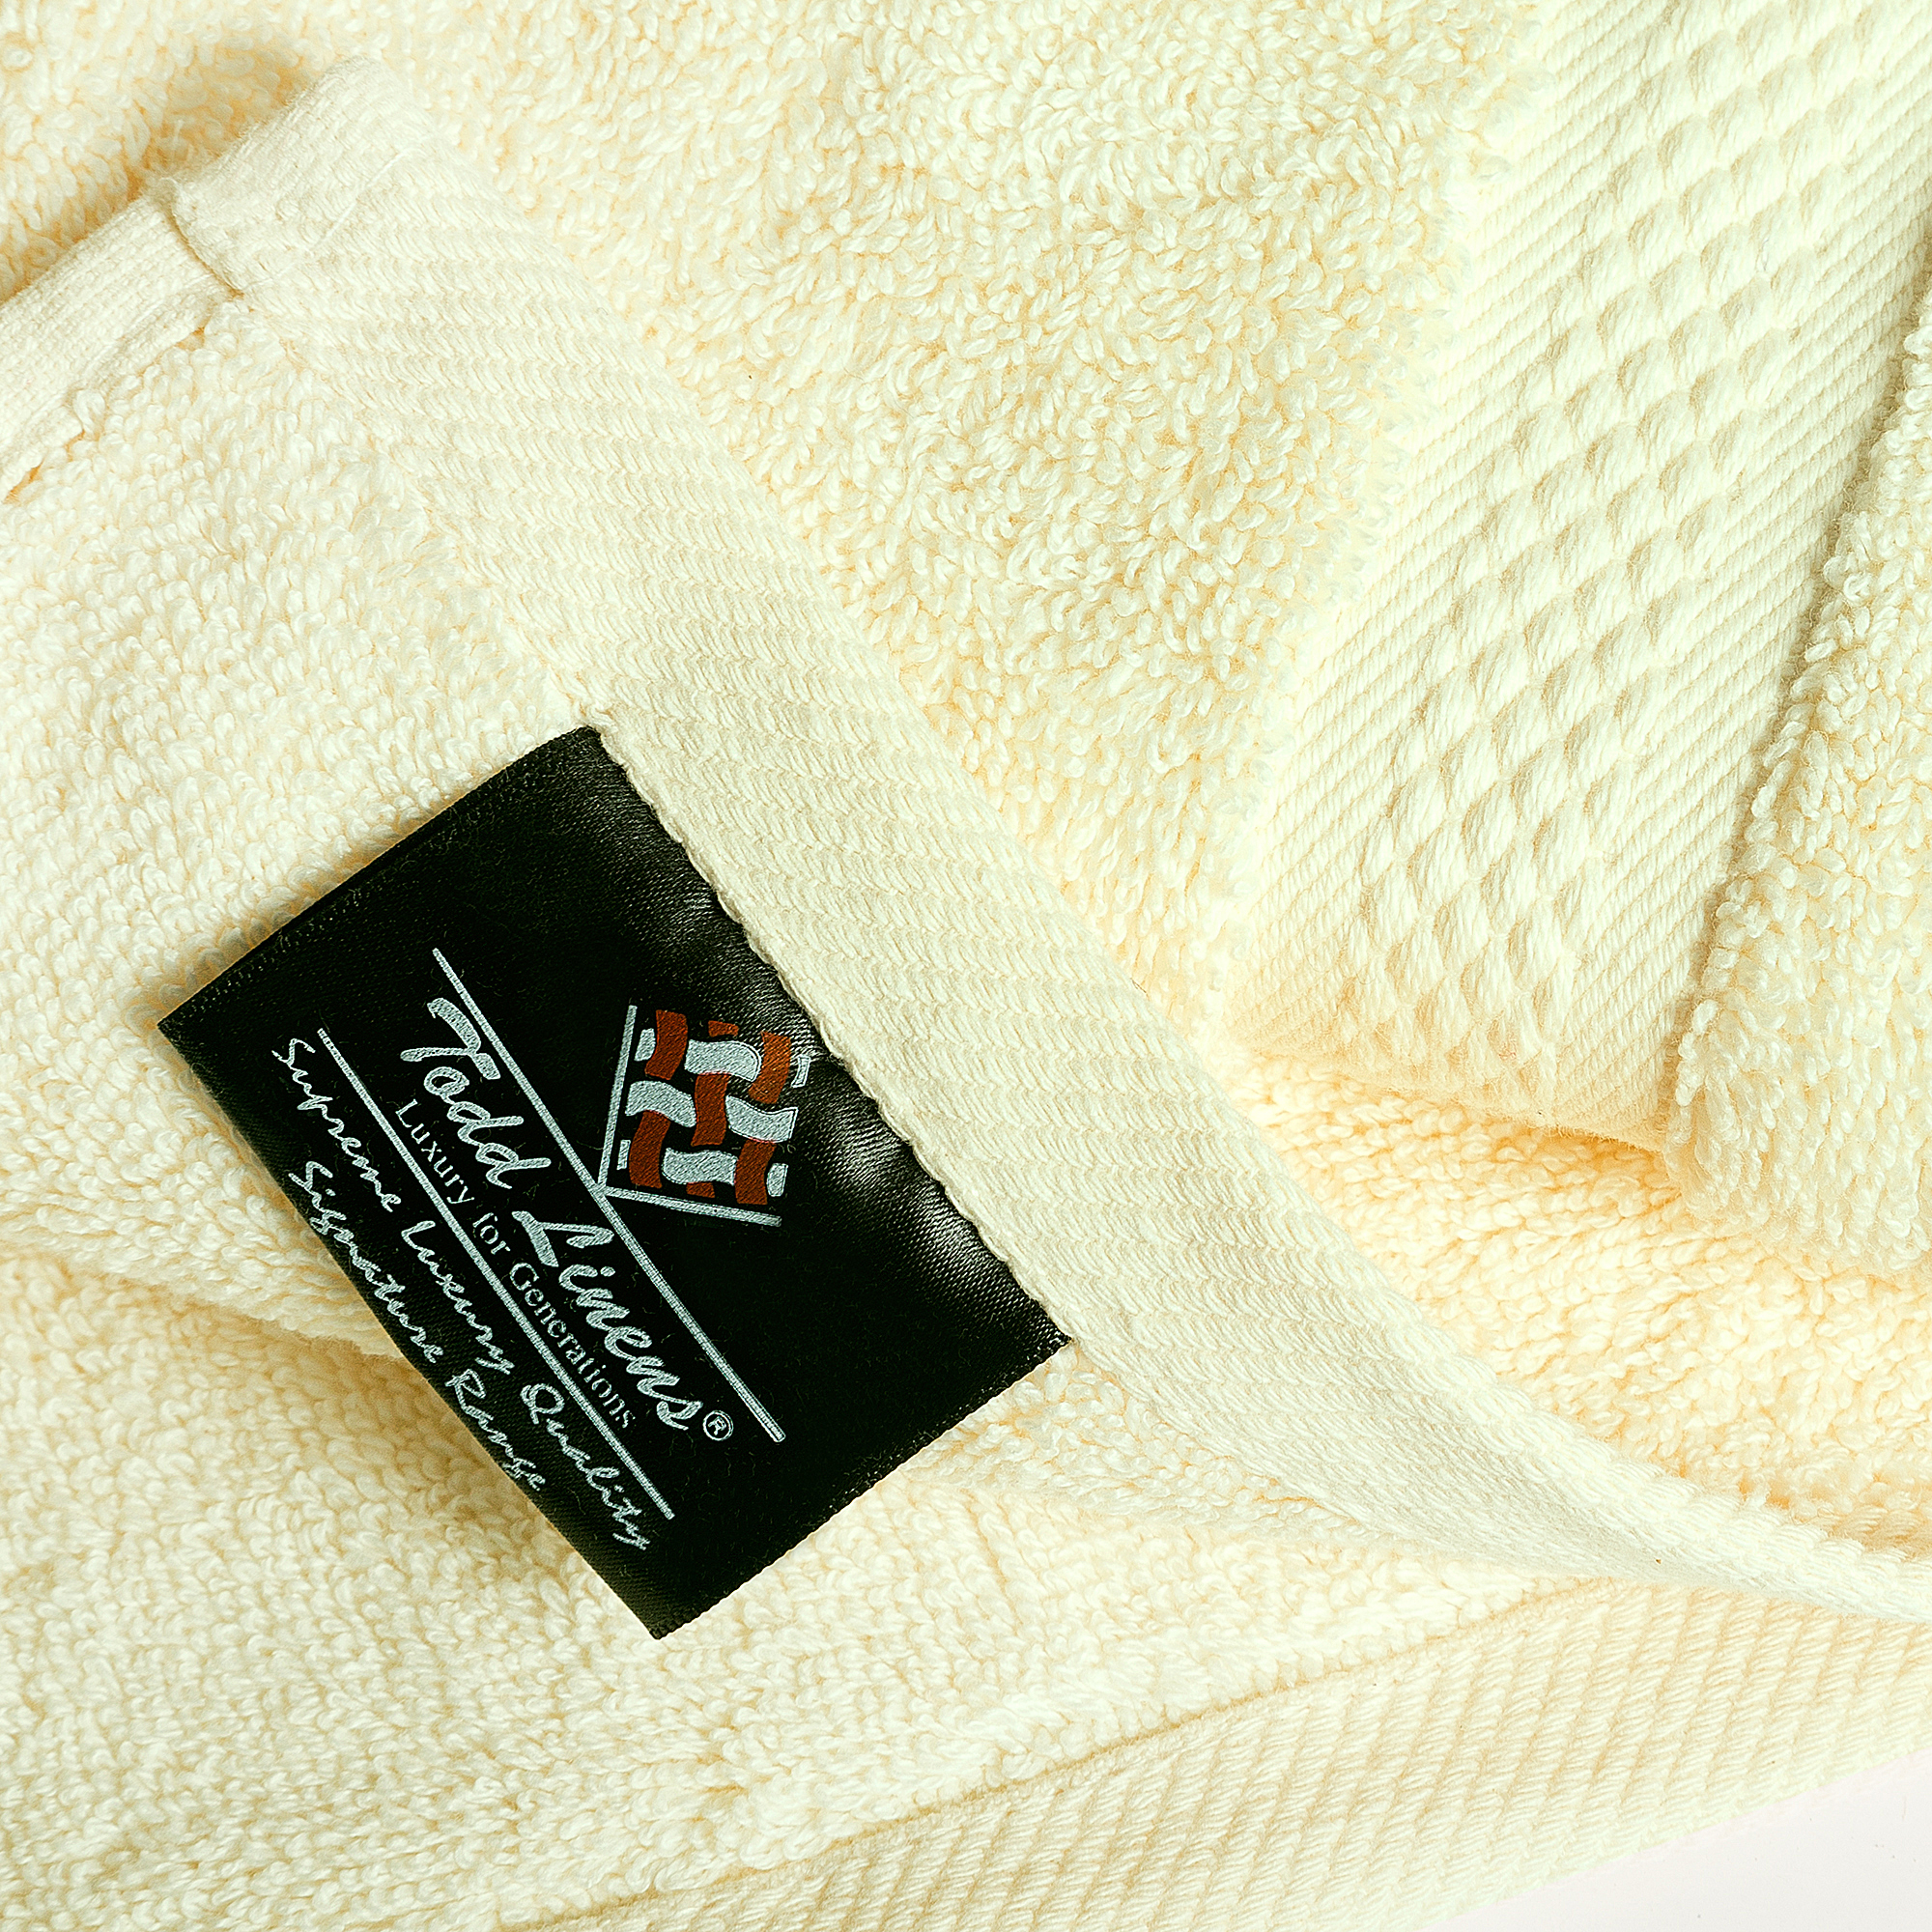 8pcs 700gsm Signature Range Cream Plain 8 Pieces Bale Set Towel